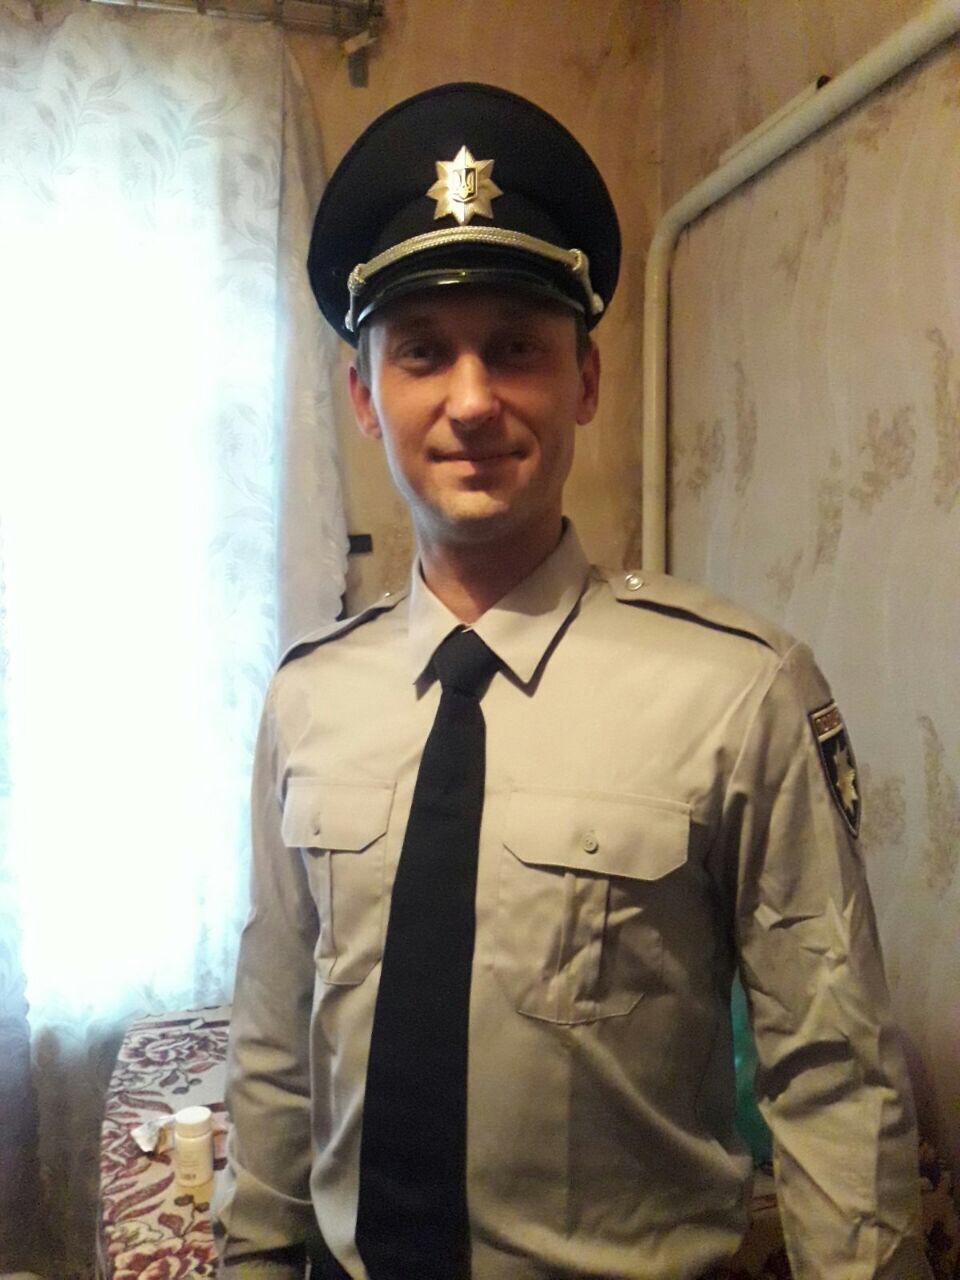 "Был настроен воевать и защищать": полицейского Юрия Чабаха опознали по жетону в братской могиле в Буче. Фото и видео